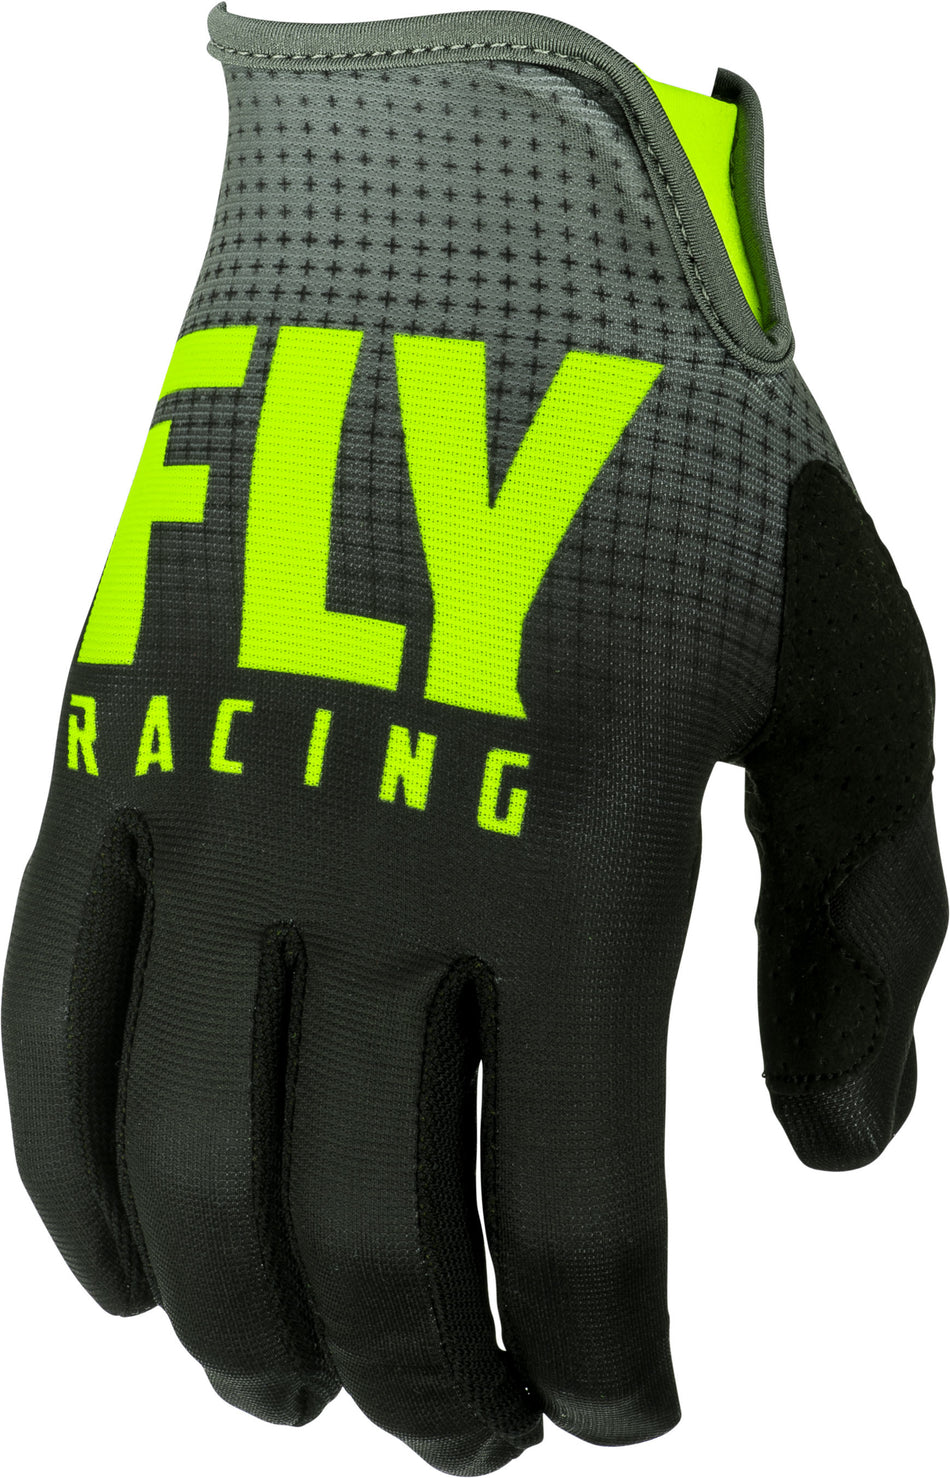 FLY RACING Lite Gloves Black/Hi-Vis Sz 06 372-01006